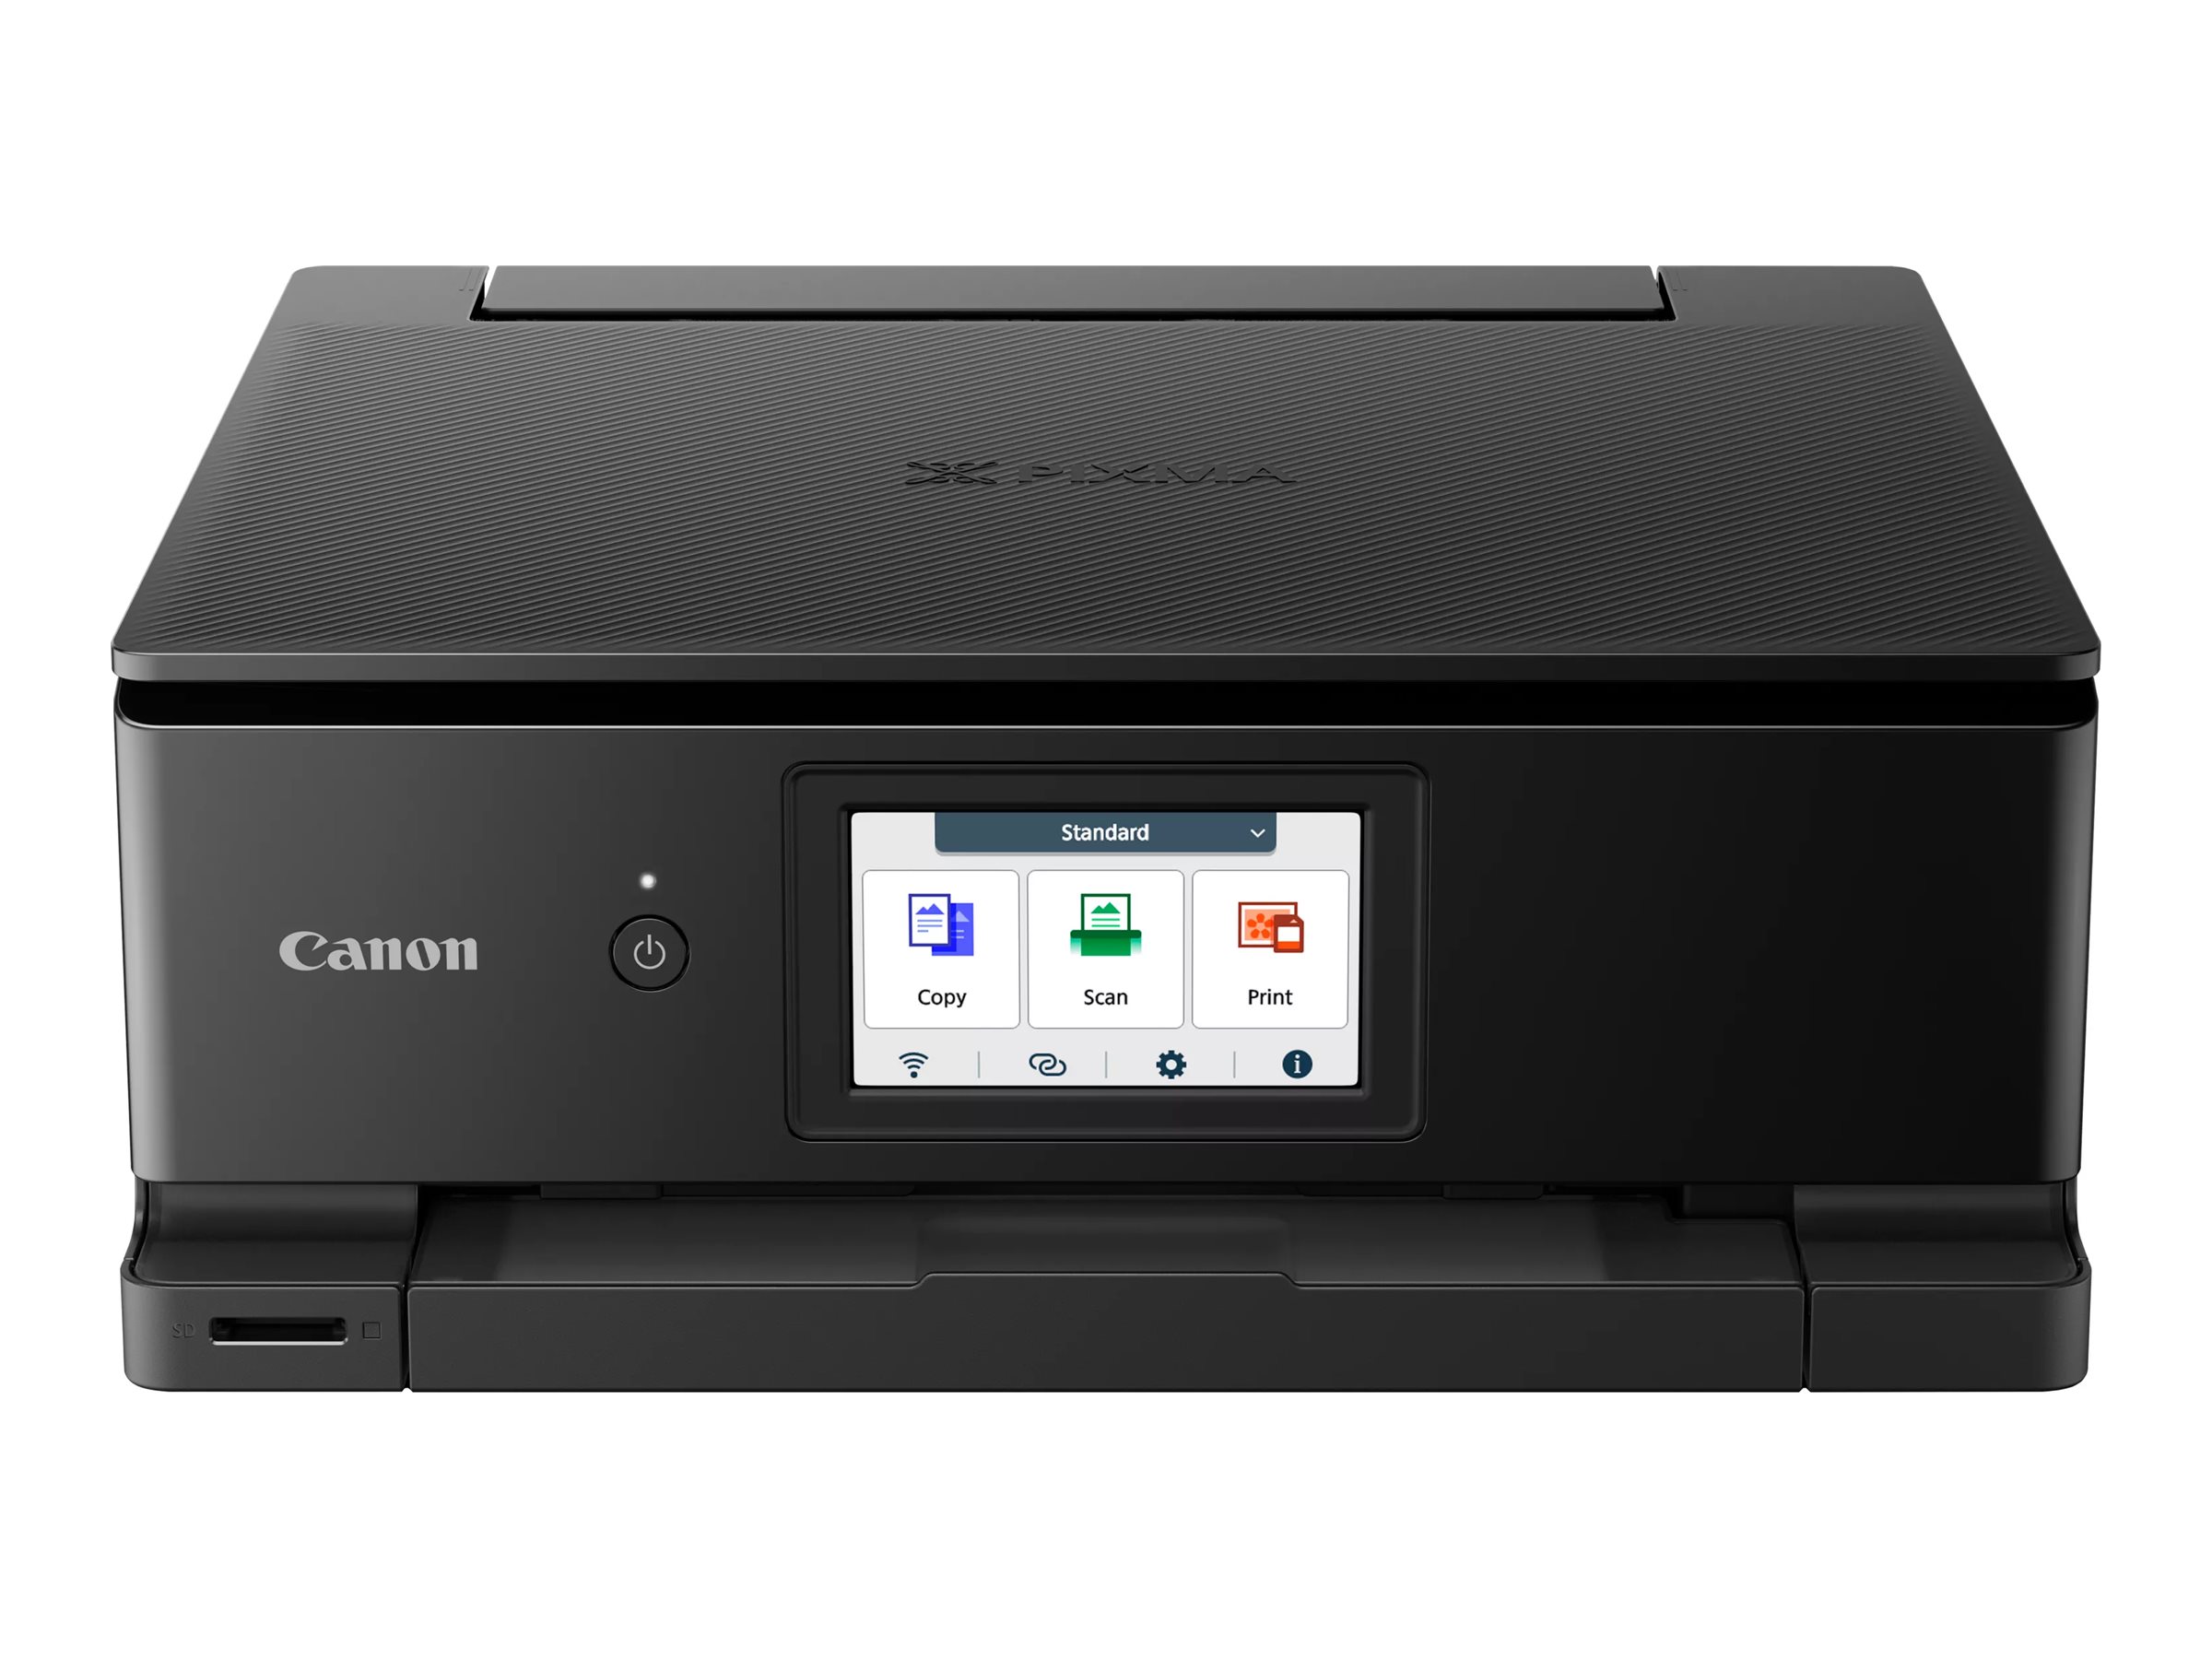 Canon PIXMA TS8750 - Imprimante multifonctions - couleur - jet d'encre - Legal (216 x 356 mm) (original) - A4/Legal (support) - jusqu'à 15 ipm (impression) - 200 feuilles - USB 2.0, Wi-Fi(ac) - noir - 6152C006 - Imprimantes multifonctions